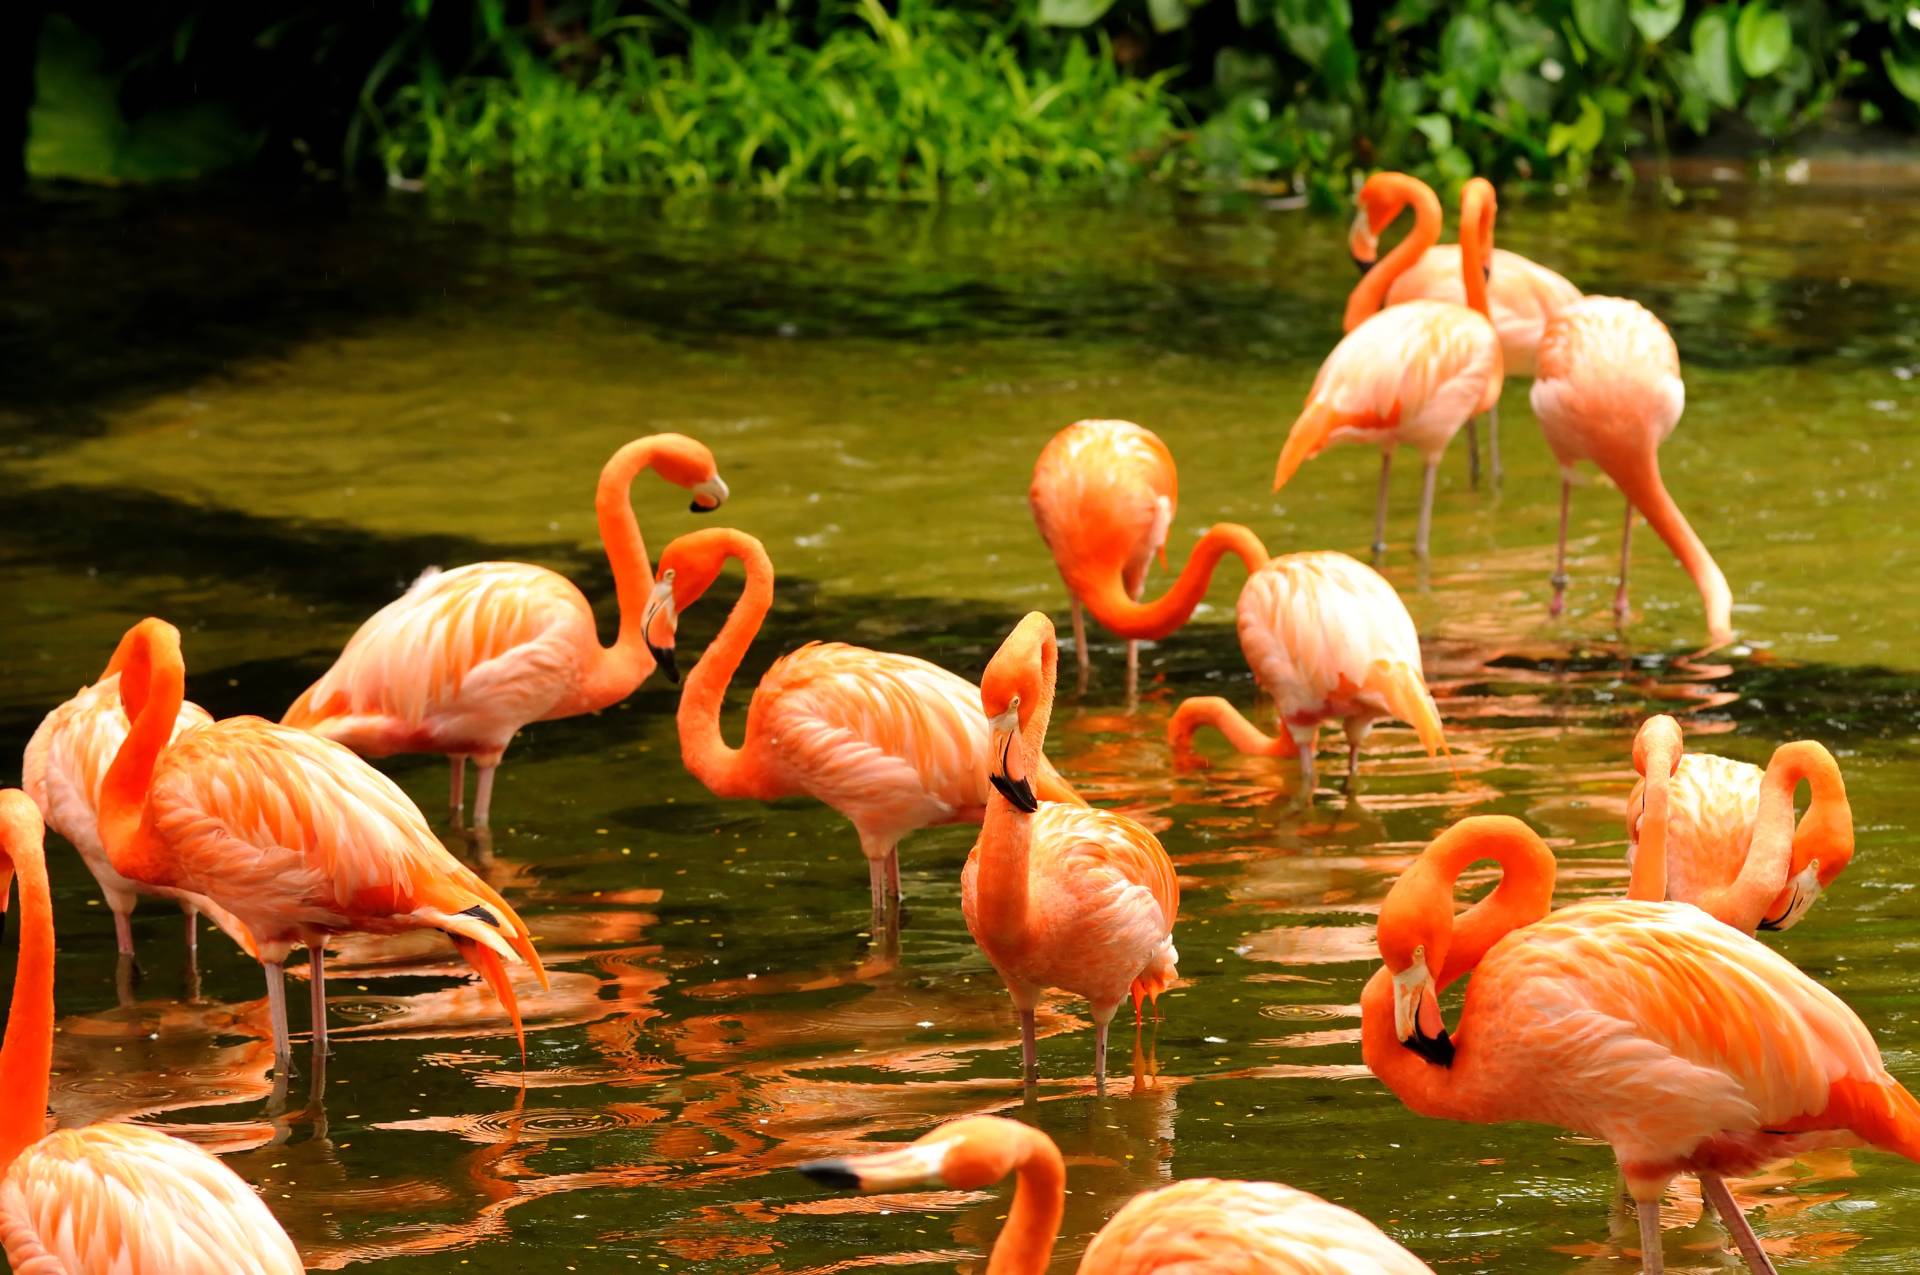 Papermoon Fototapete "Pink Flamingos" von Papermoon